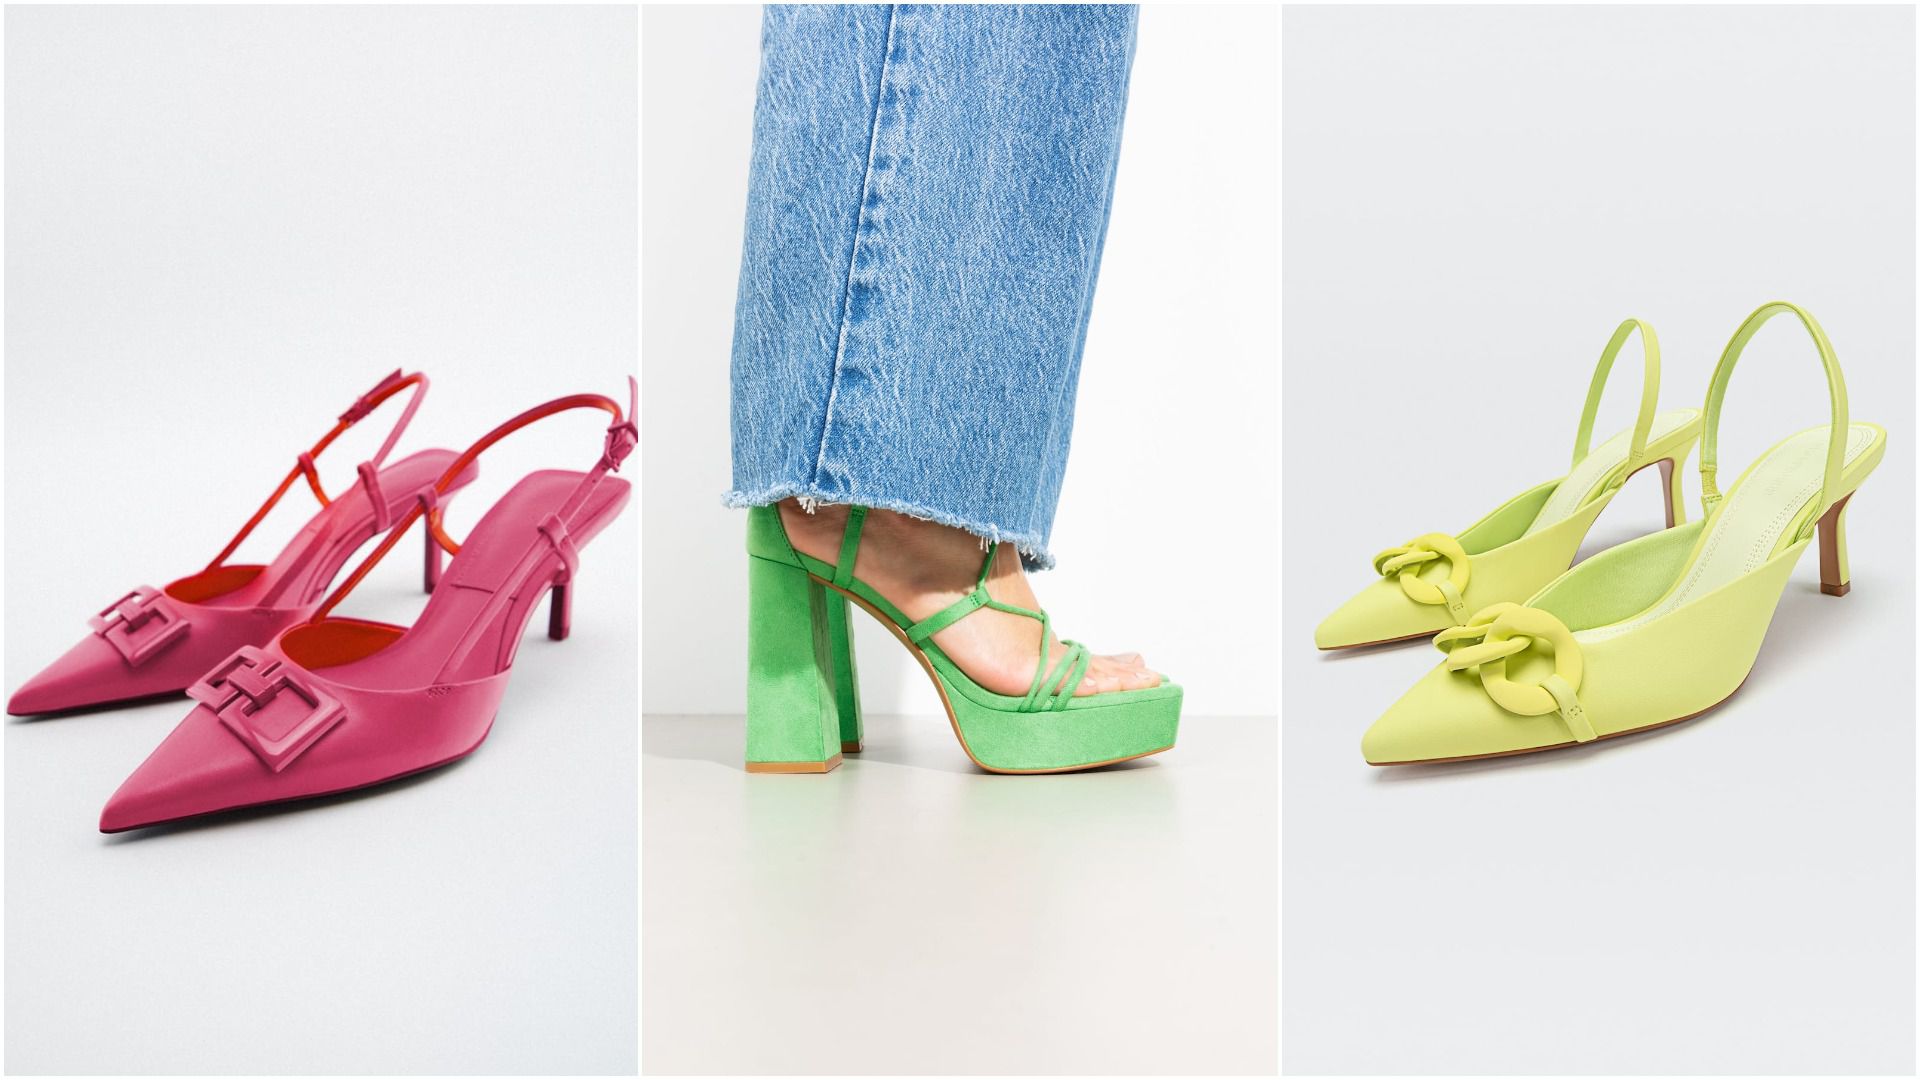 Cipele i sandale u efektnim bojama koje će "podići" i najjednostavniju odjevnu kombinaciju